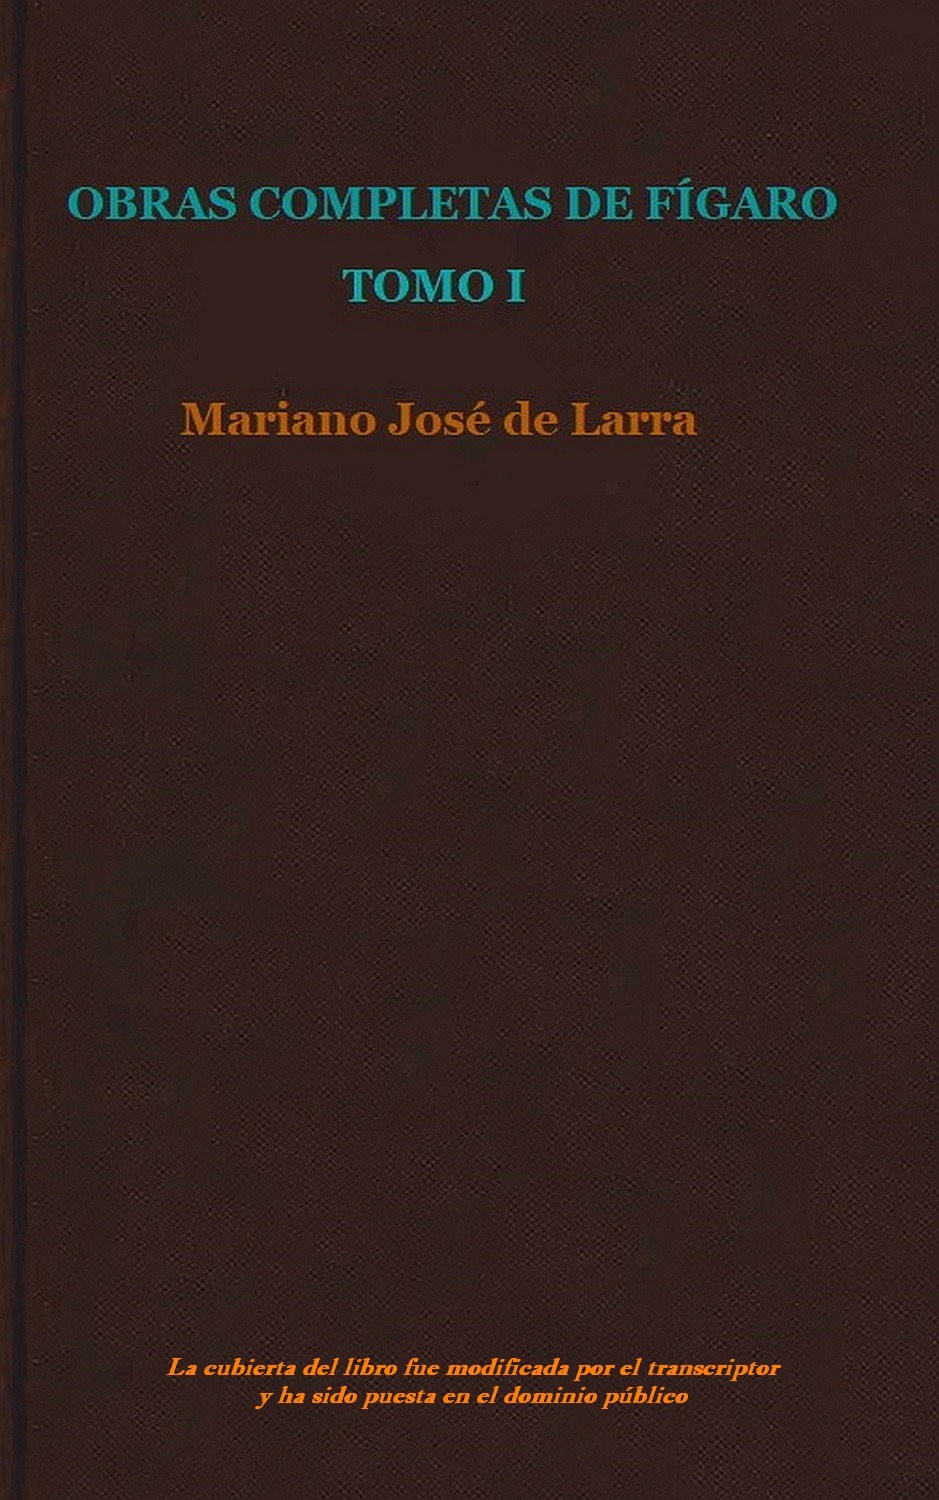 Obras Completas De Fígaro Mariano José de Larra—A Project Gutenberg eBook